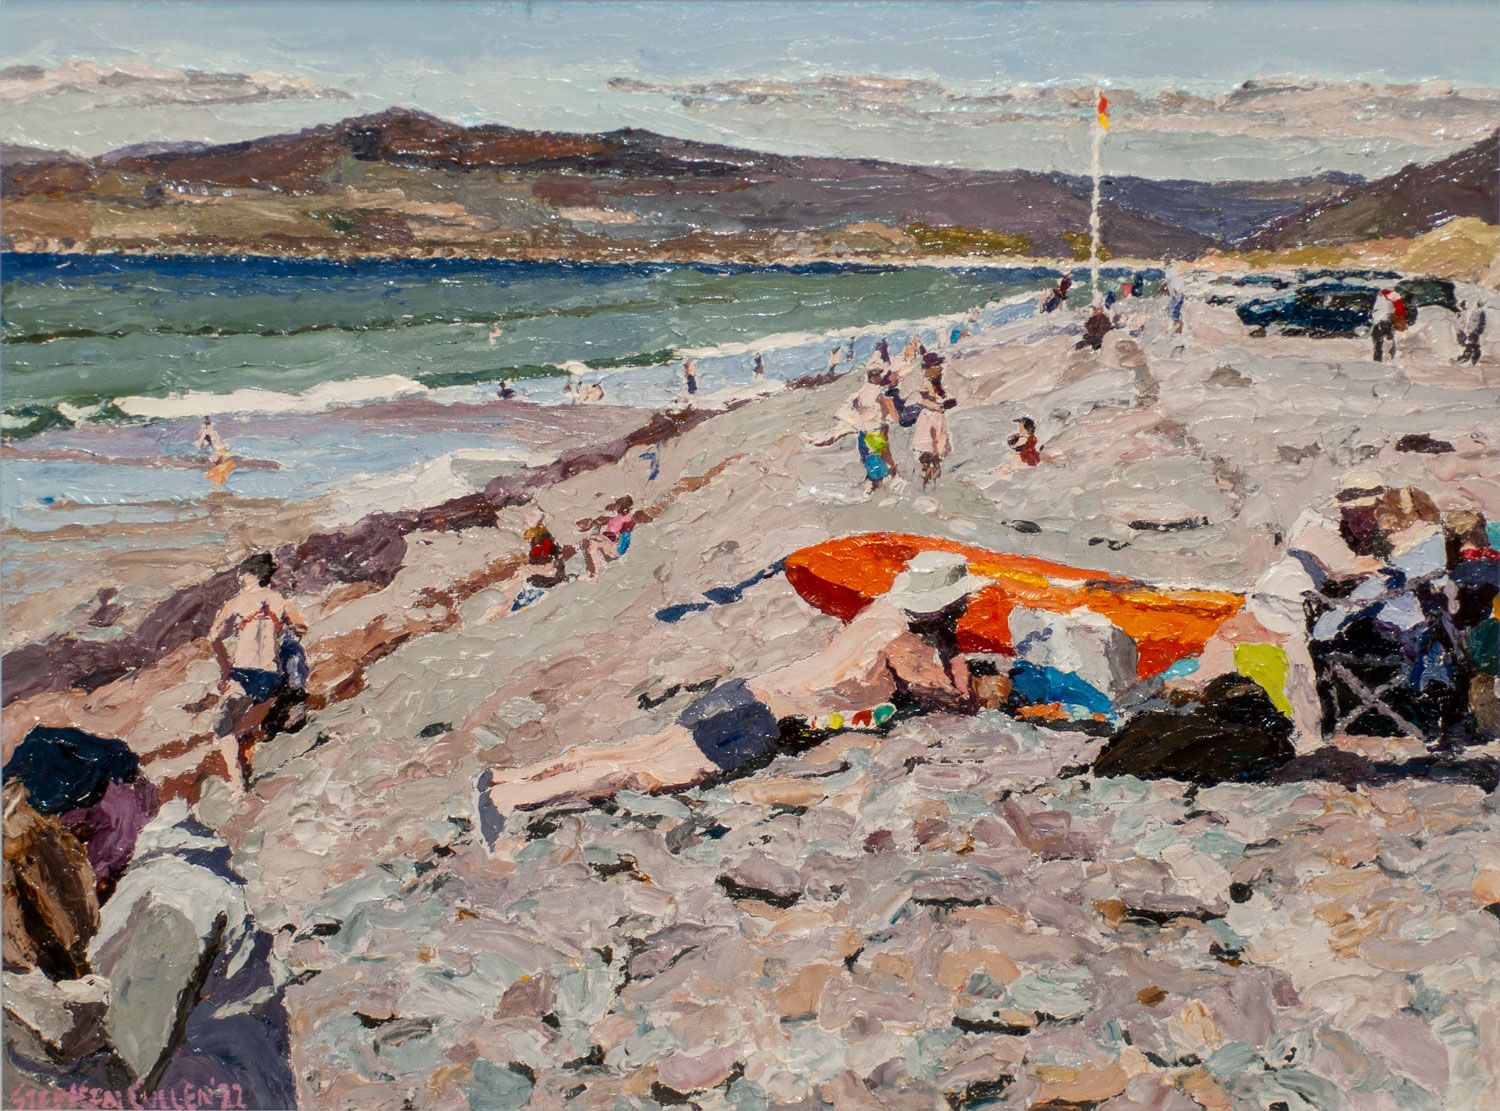 Rossbeigh Beach, Kerry by Stephen Cullen